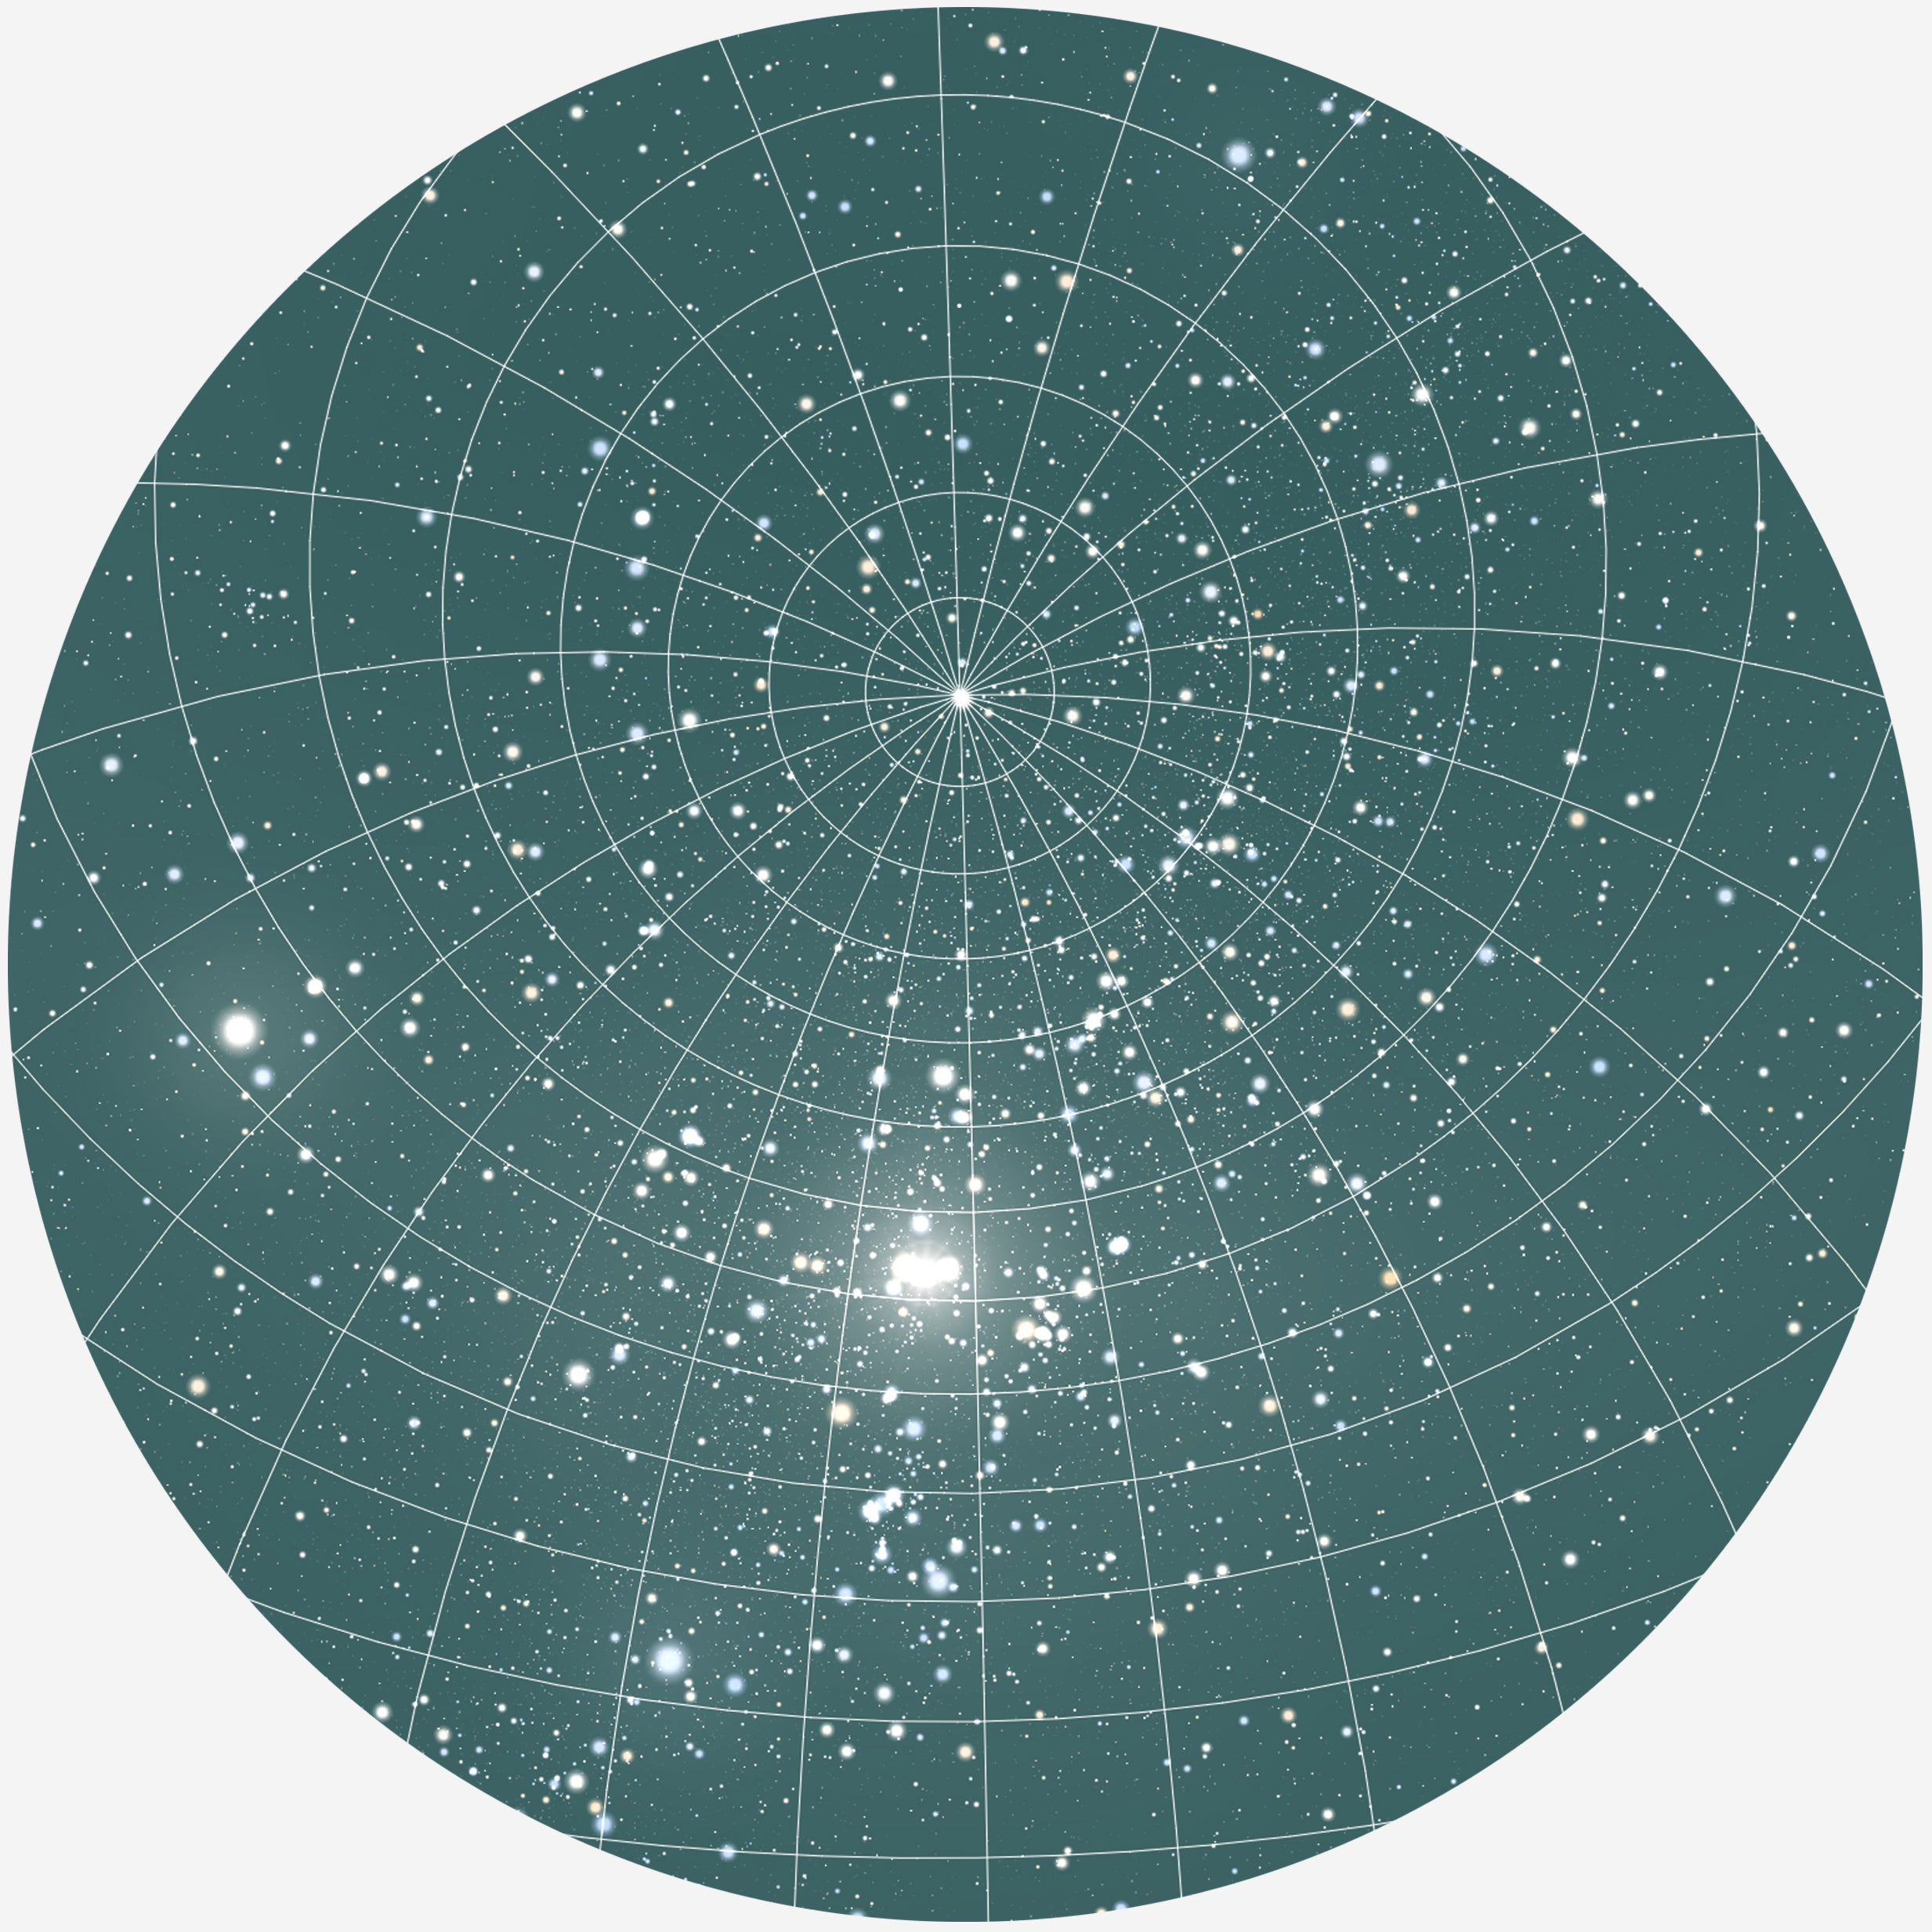 Se RUND PLAKAT MED PERSONLIG STJERNEHIMMEL (MØRKEGRØN) - 20 cm / Stjernehimmel med gitter hos KISPUS